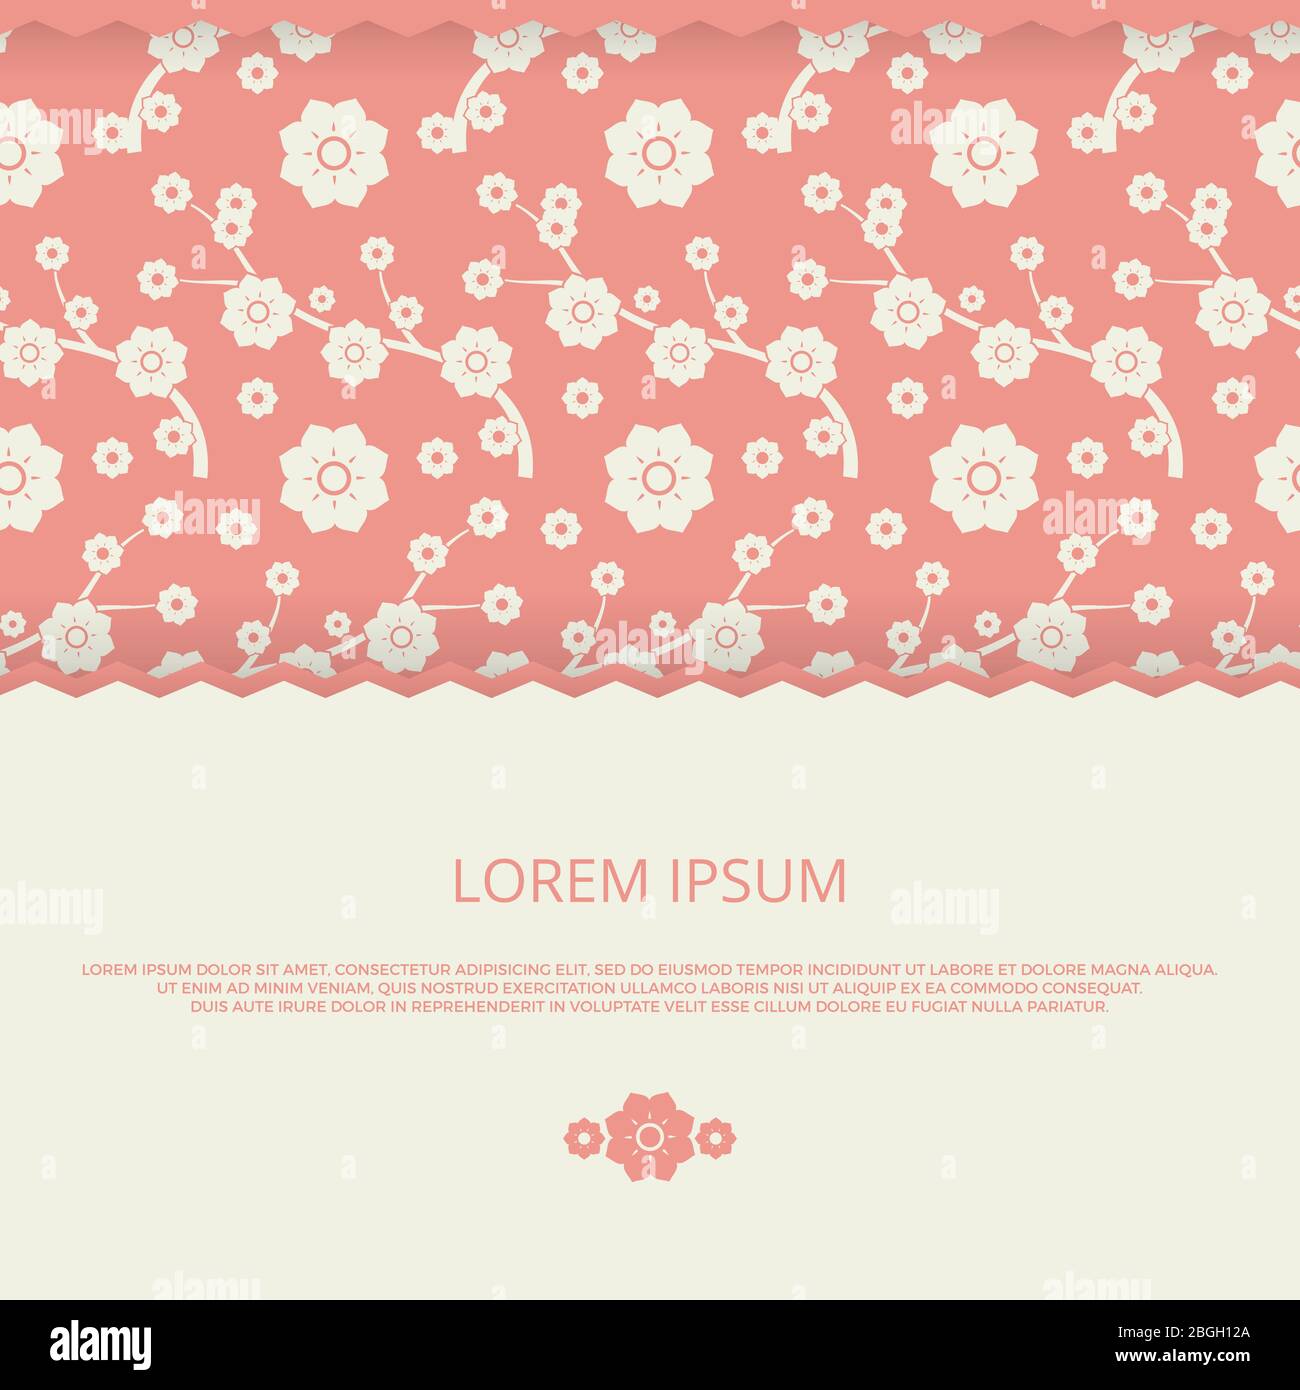 Romantisches Bannerdesign. Vektor floralen Hintergrund mit Banner für Hochzeit Einladung, Karten und Plakate Illustration Stock Vektor